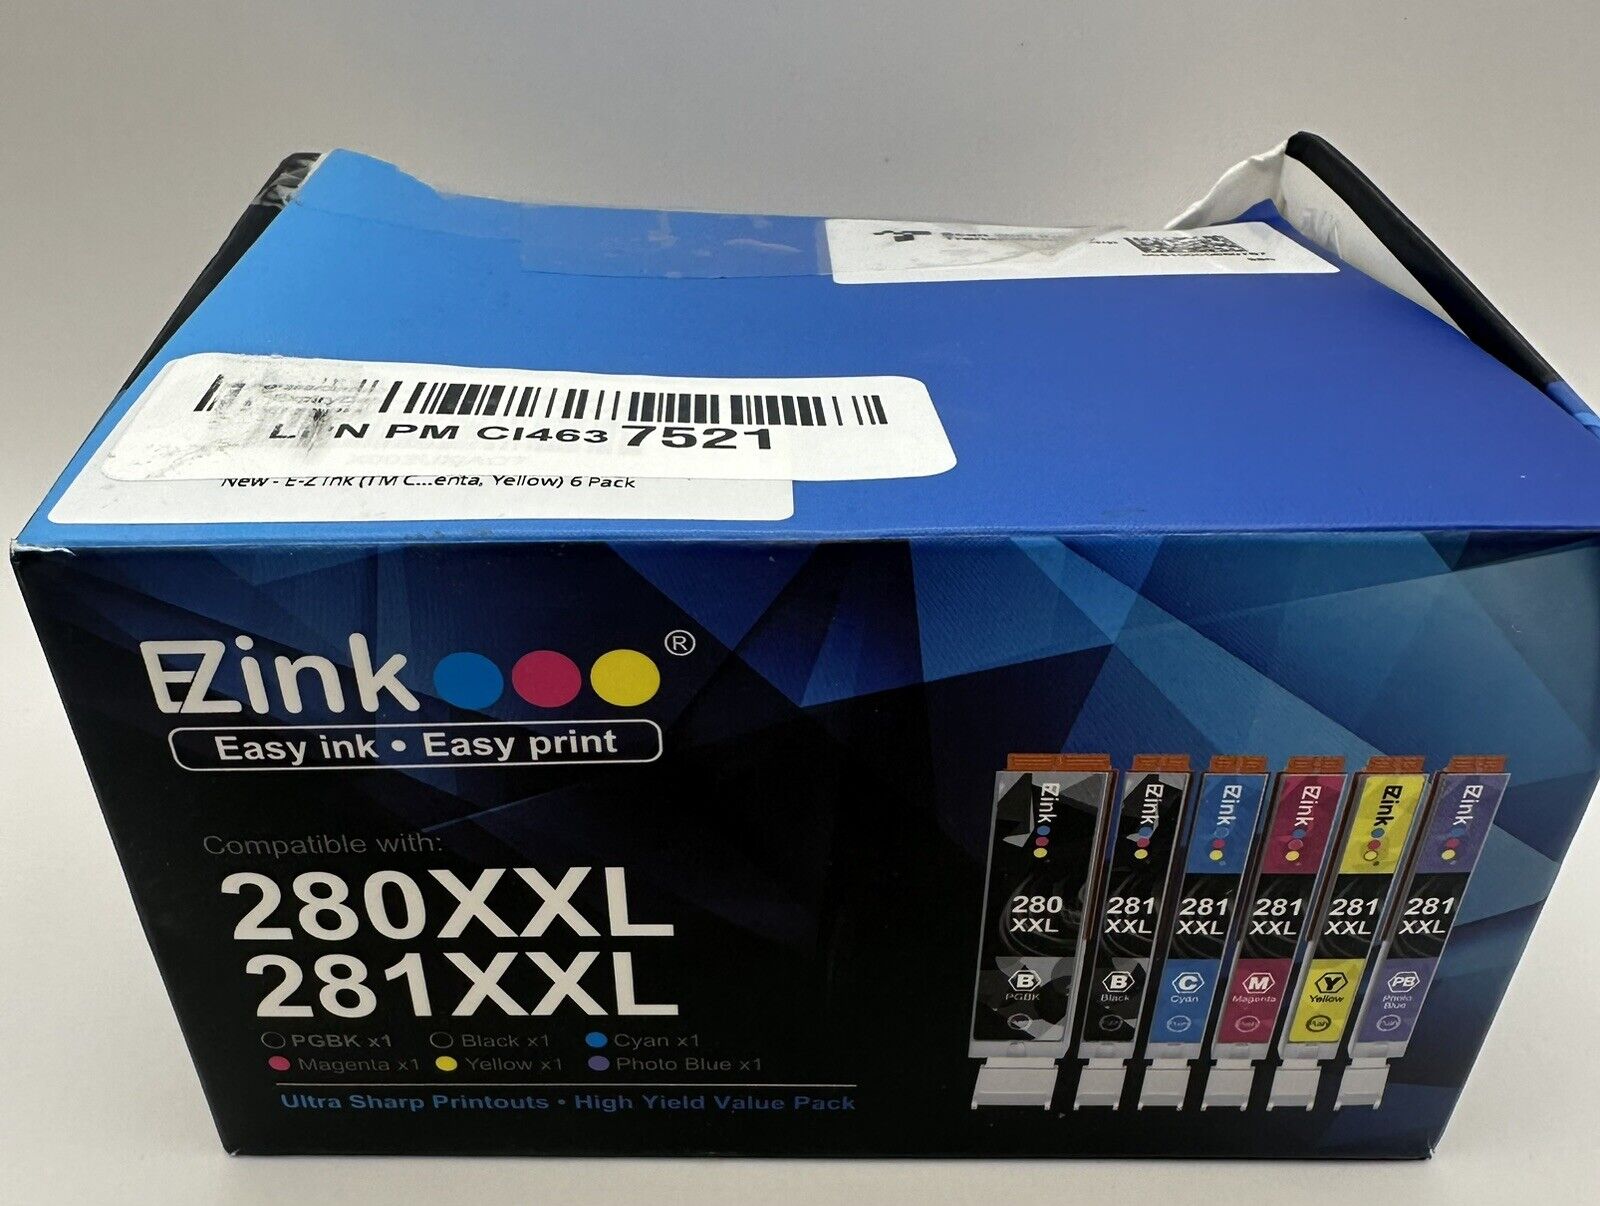 EZInk 280XXL 281XXL Ink Cartridges